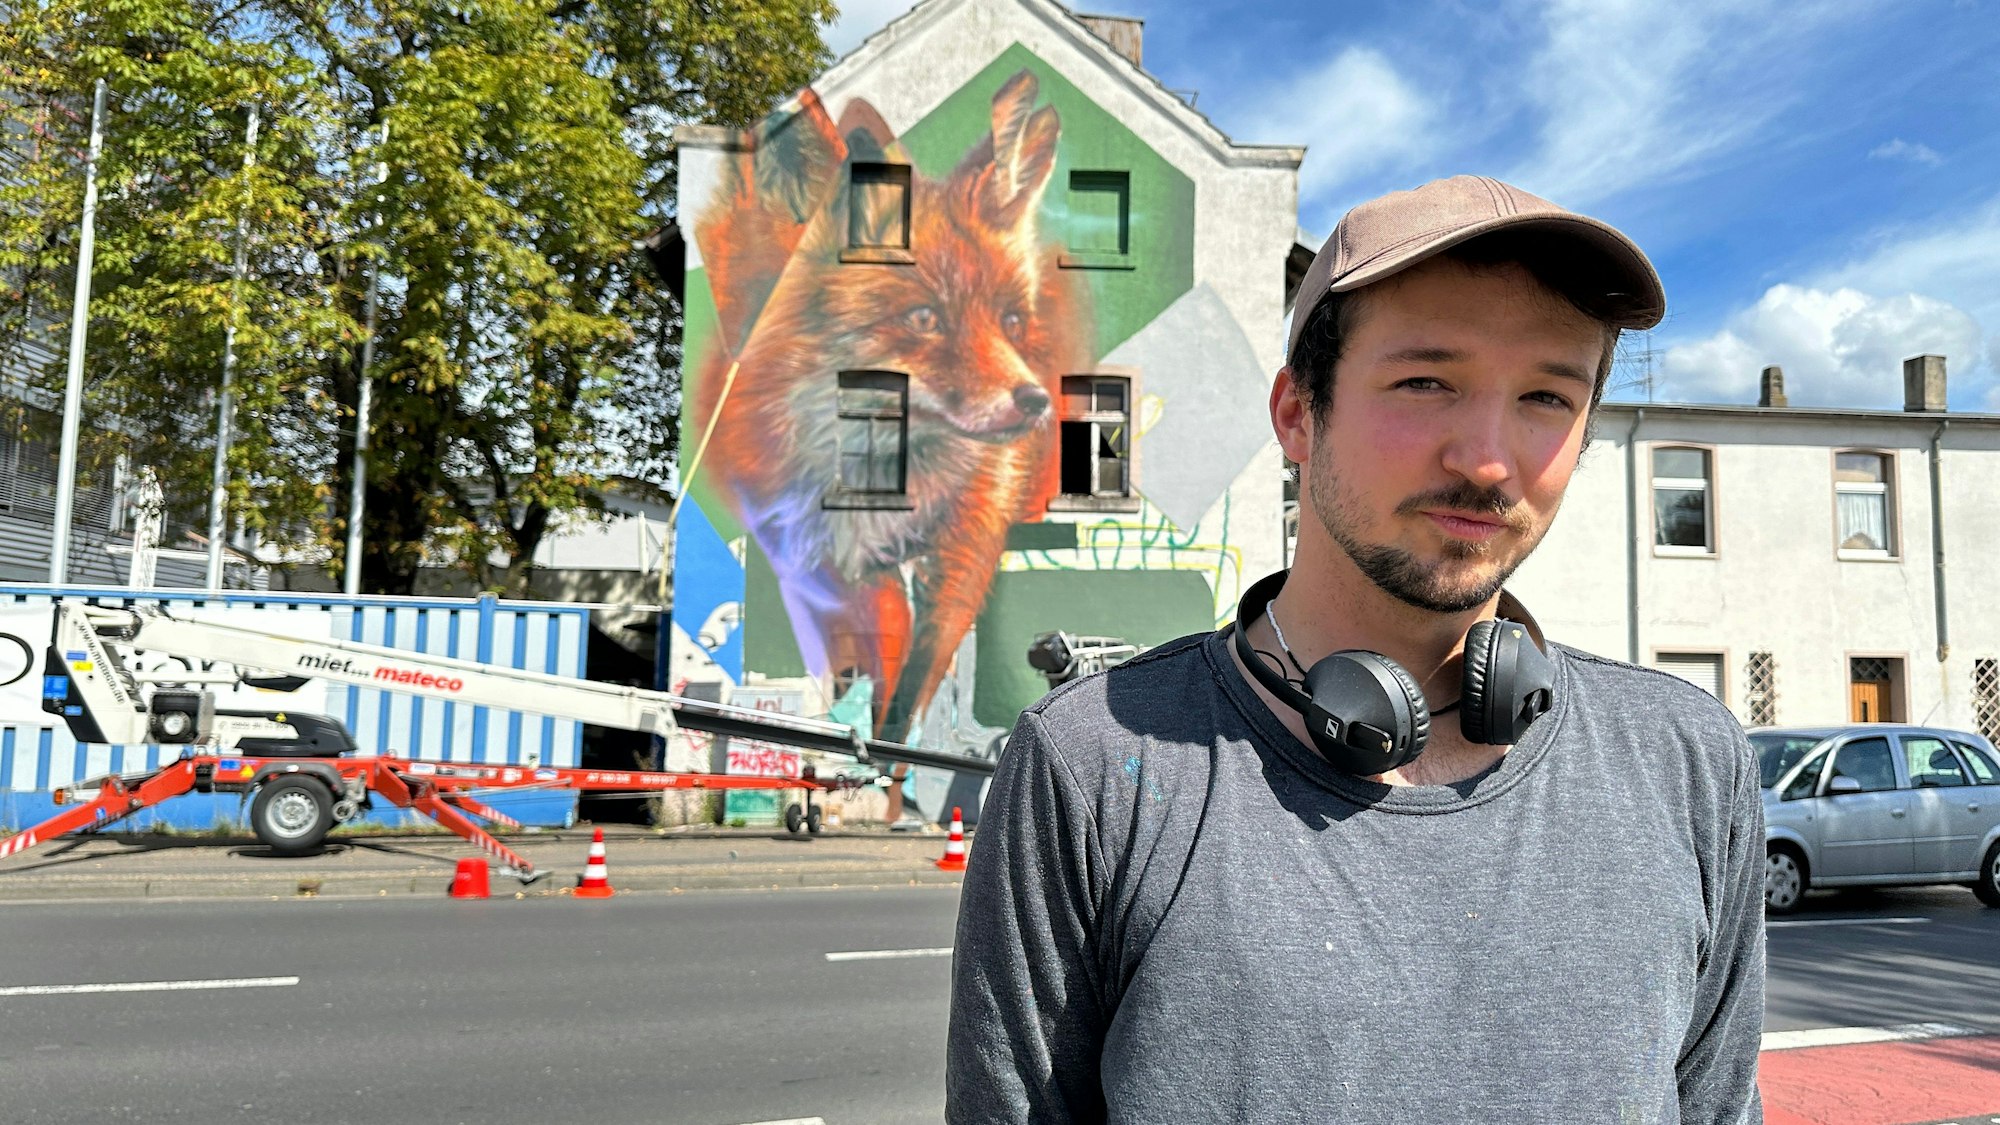 Ein junger Mann mit Käppi und Kopfhörern um den Hals steht an einer Straße. Im Hintergrund ist ein Gebäude zu sehen, auf dem ein großer Fuchs prangt.